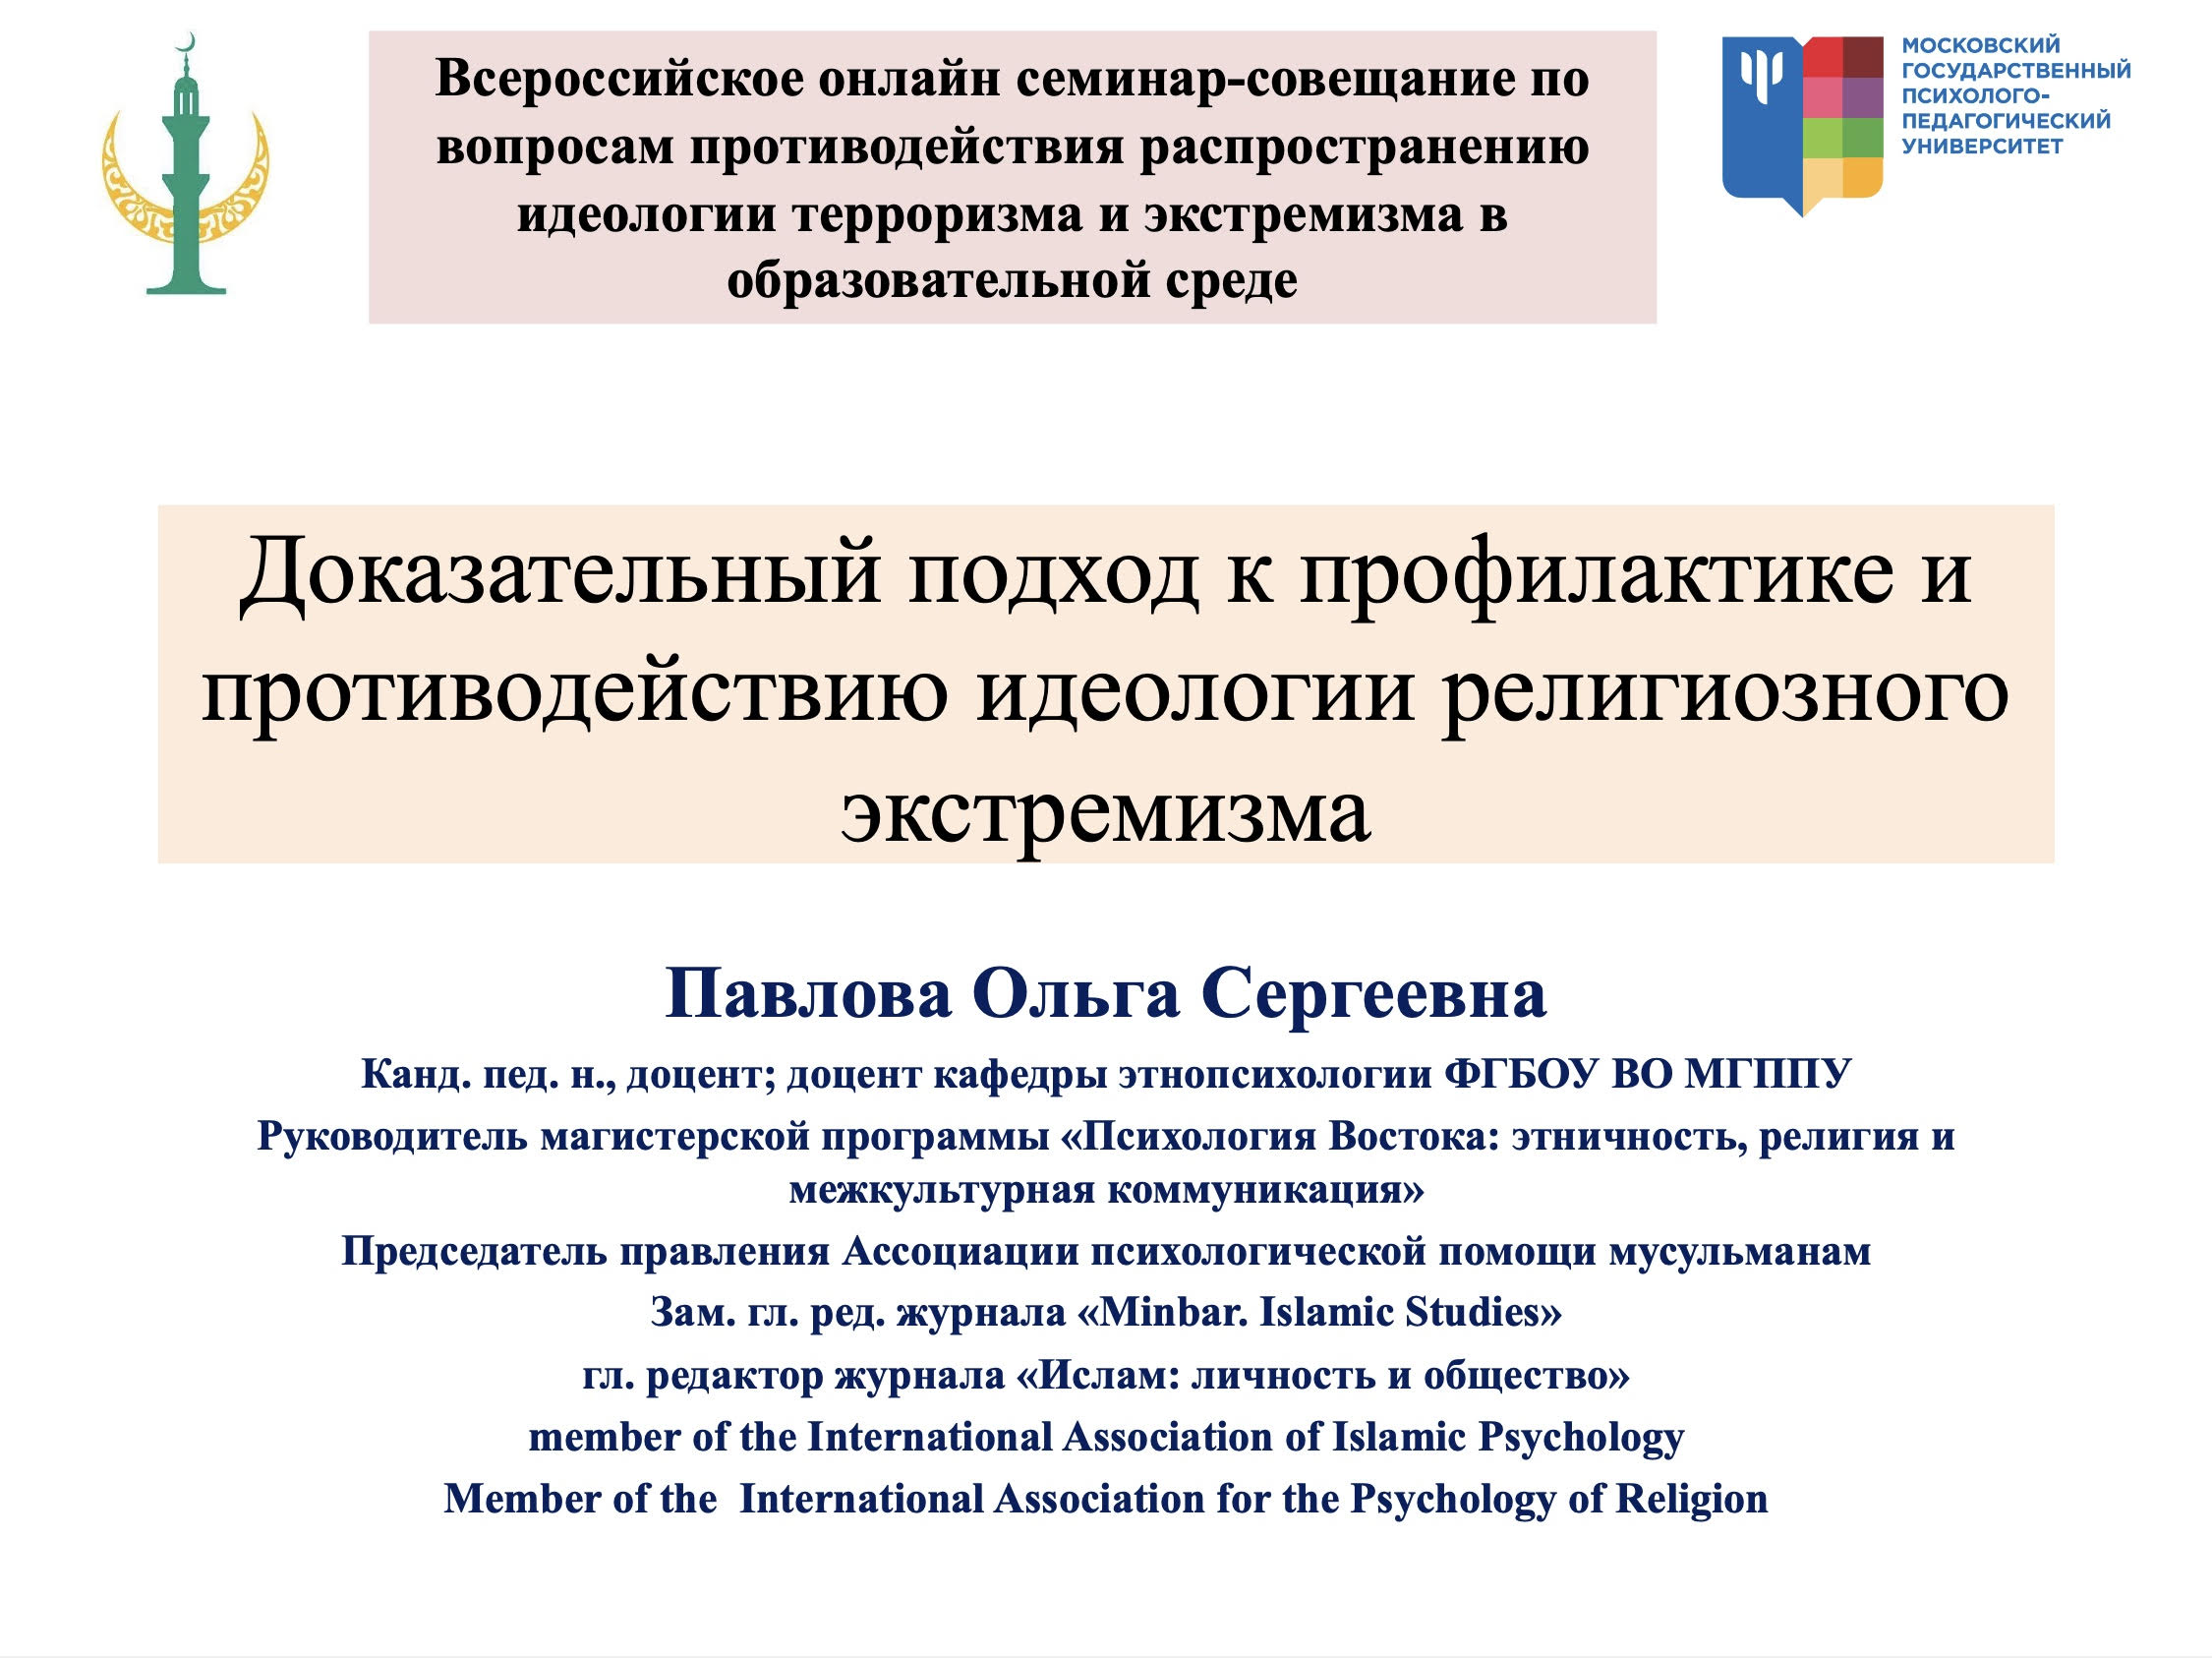 2020-11-18 Доцент кафедры этнопсихологии выступила на всероссийском совещании по вопросам противодействия распространению идеологии терроризма и экстремизма в образовательной среде